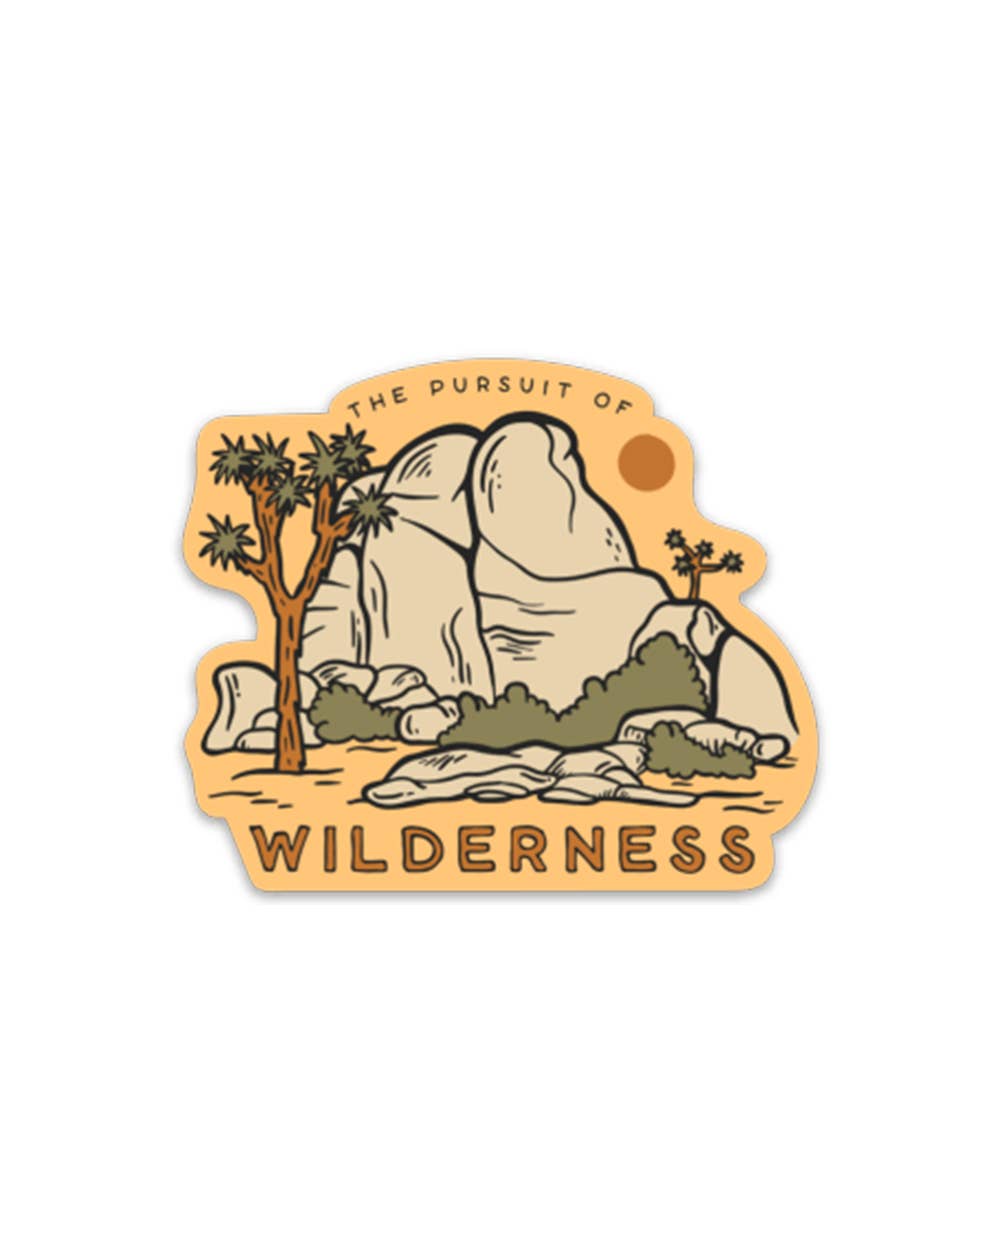 In pursuit of wilderness desert sticker by Keep Nature Wild